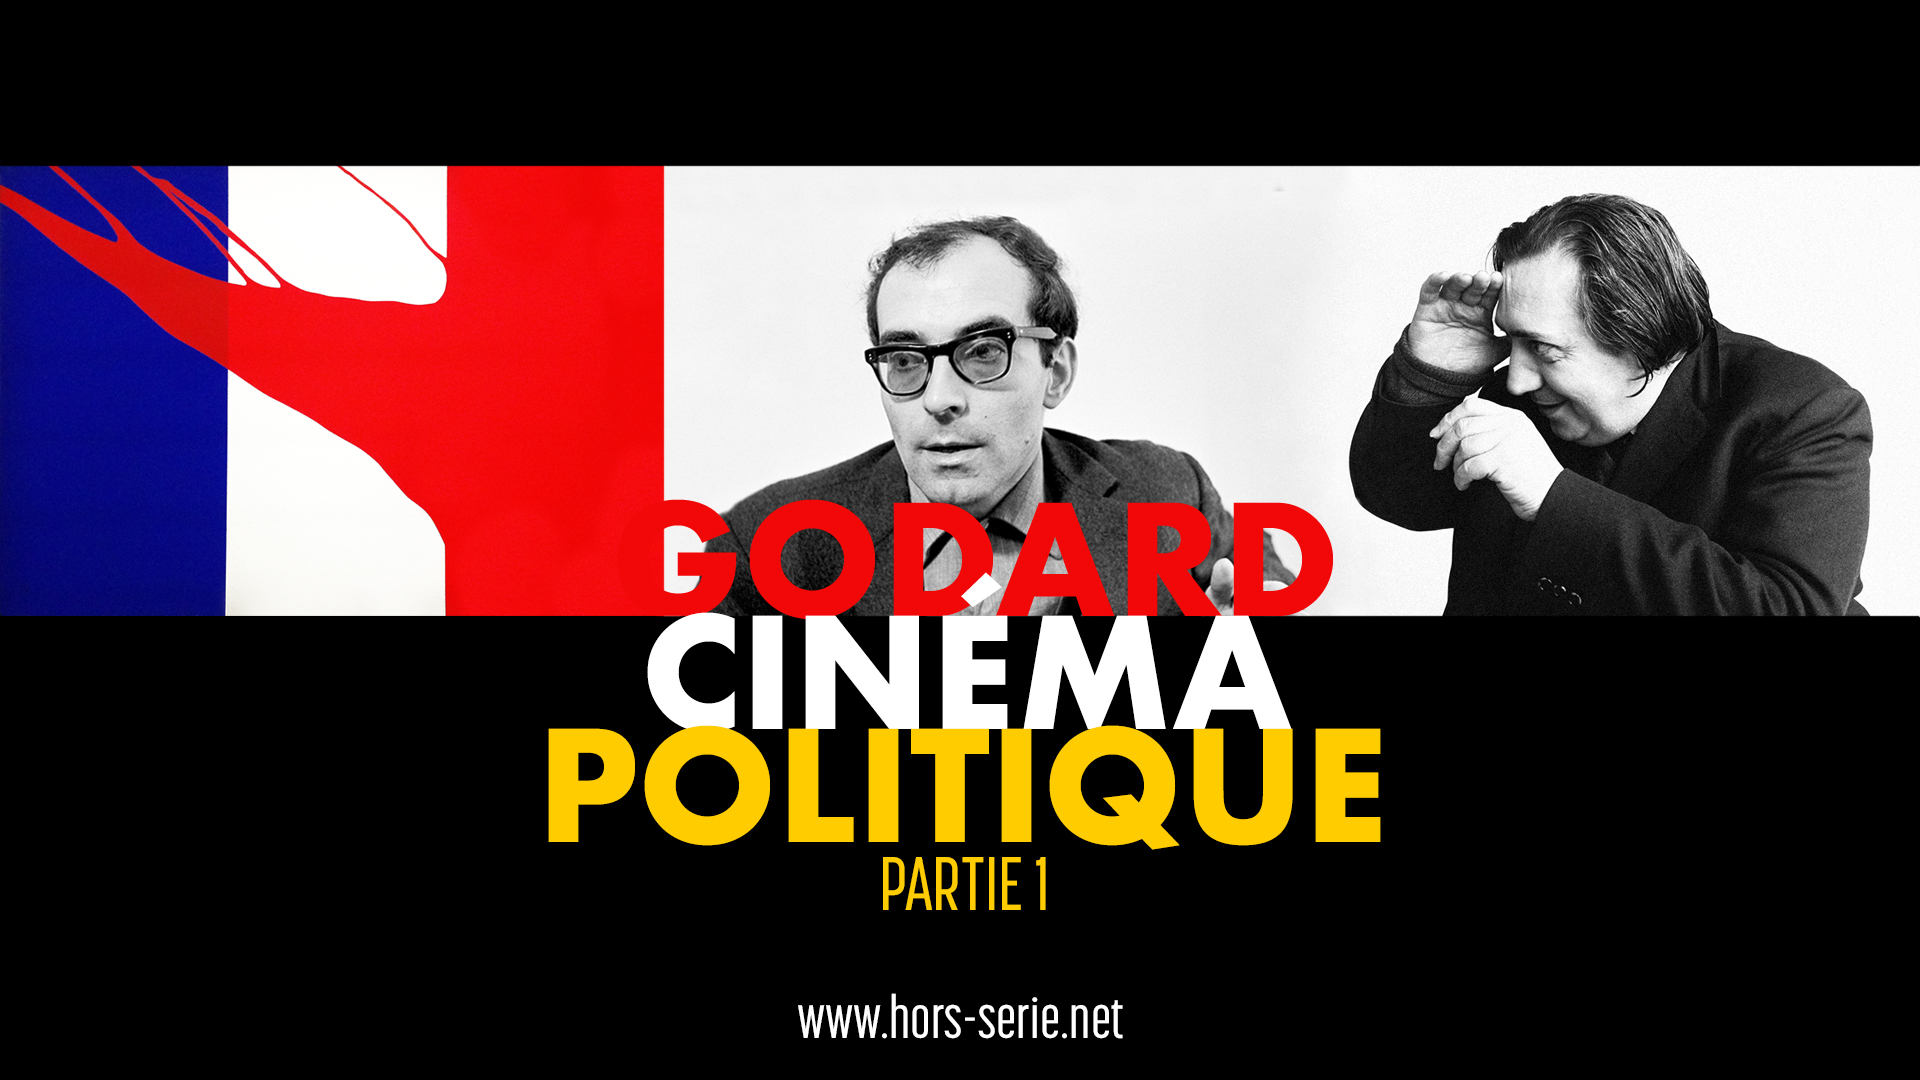 Godard cinéma politique (part. 1)